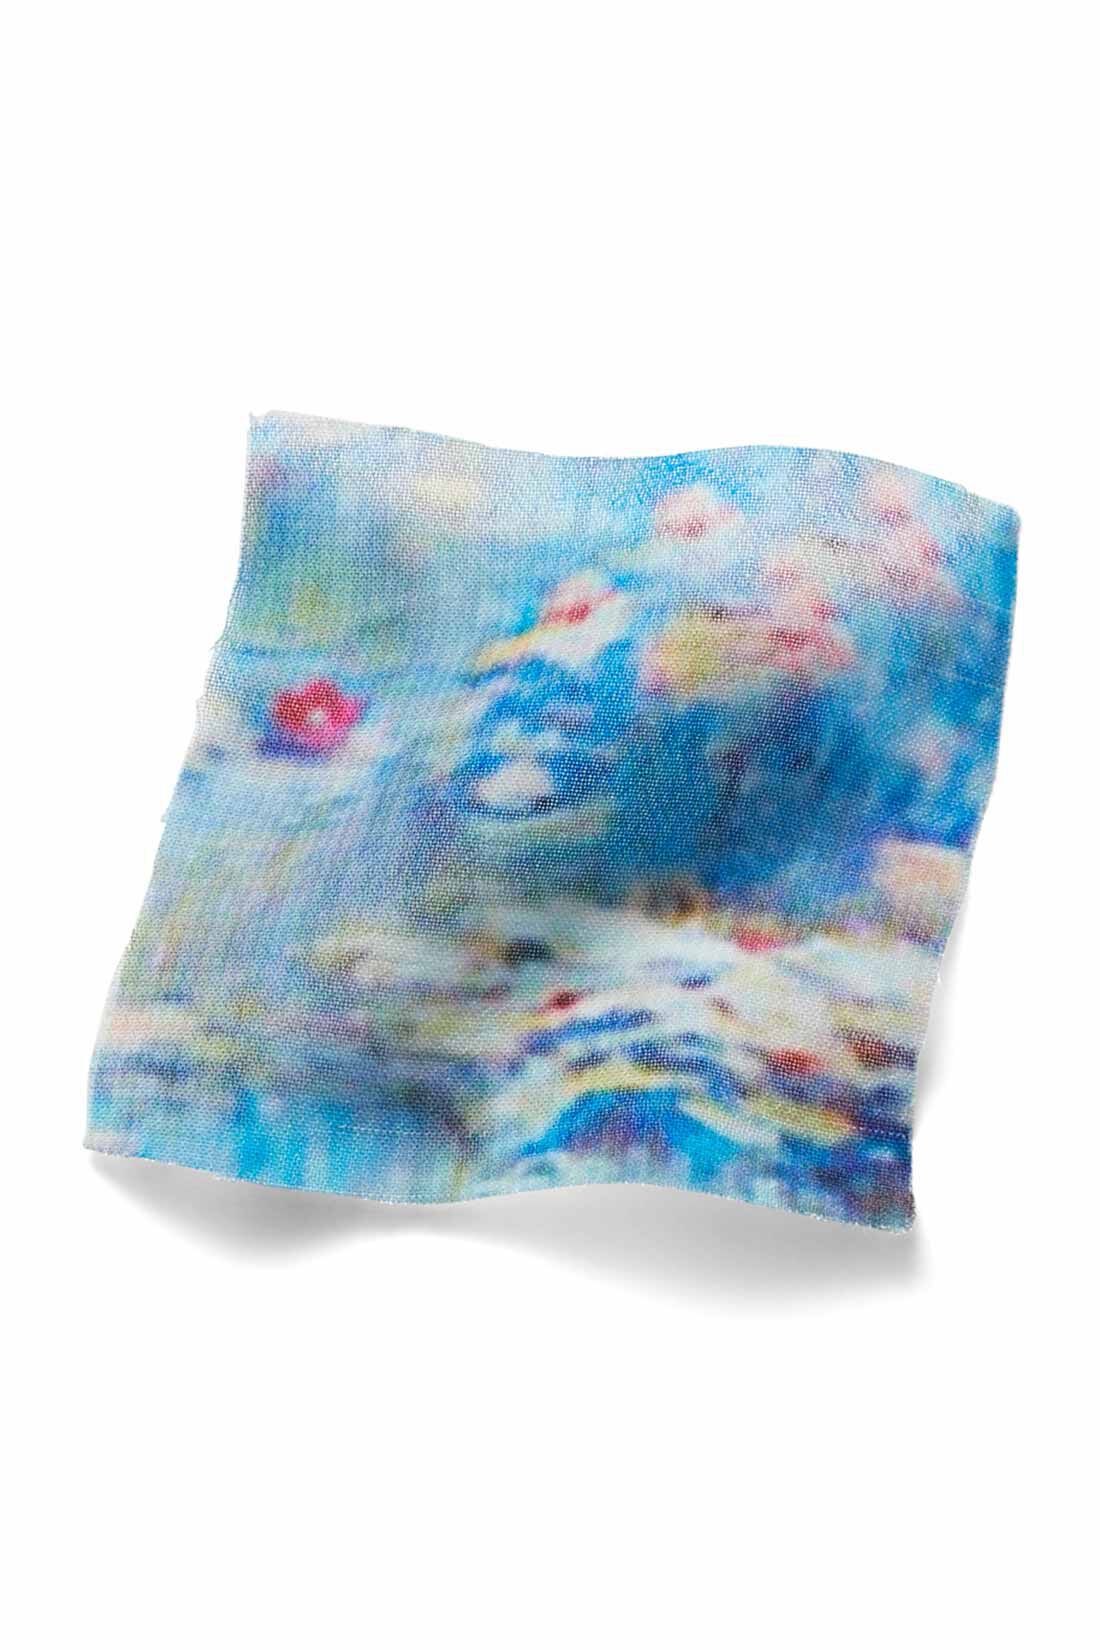 IEDIT|IEDIT[イディット]　モネの睡蓮をまとうシフォンスカート〈ブルー〉|原画をもとにパターンを起こし、水面を思わせる、透け感のあるシフォン素材にプリント。